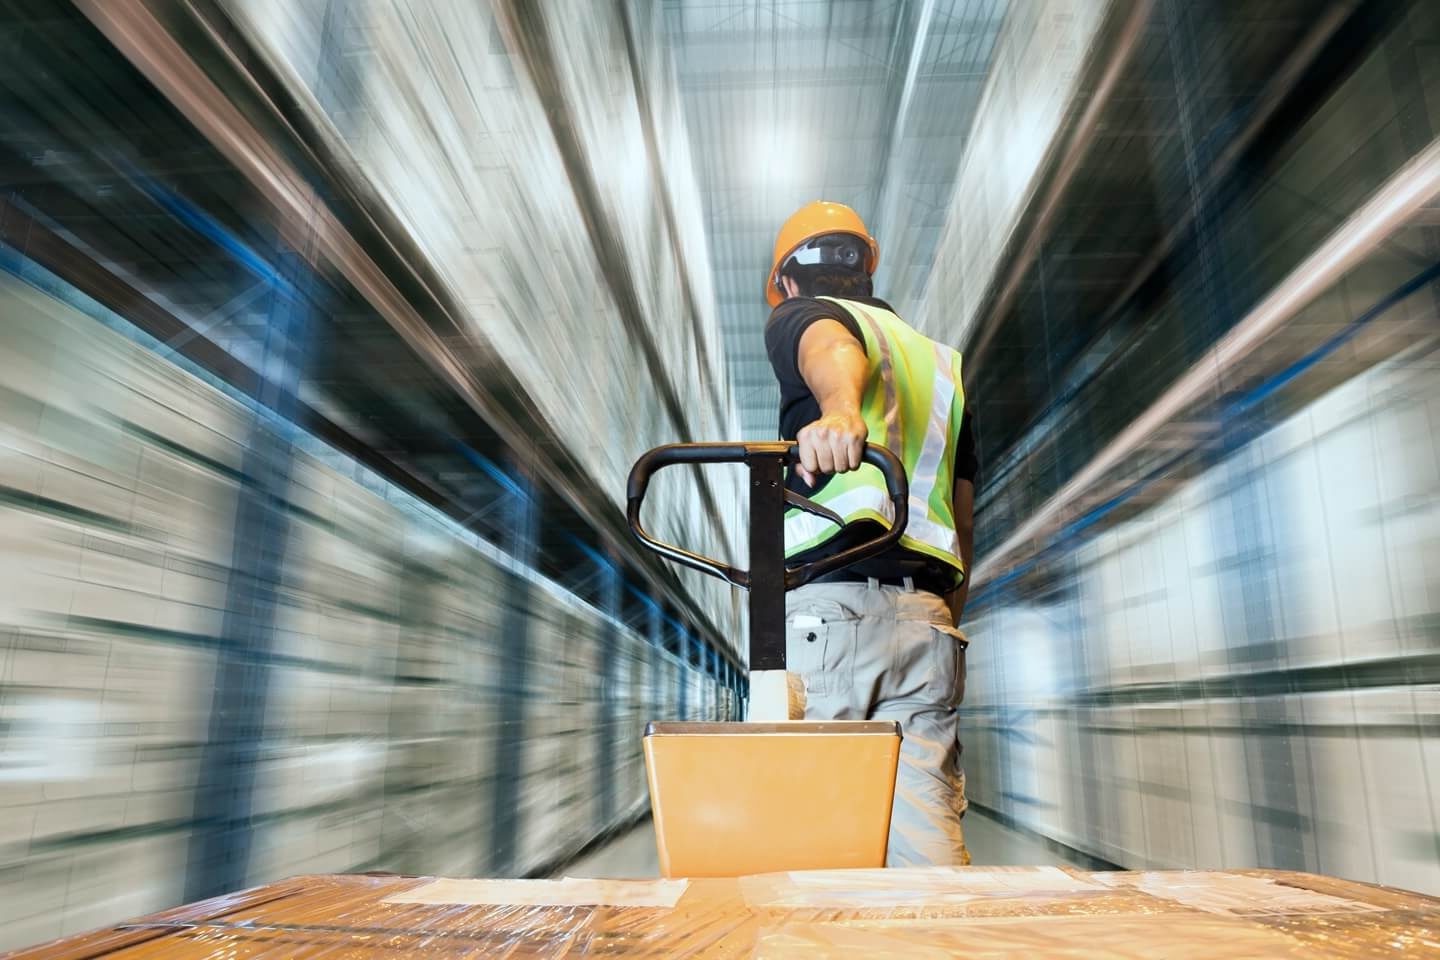 A warehouse worker pulls a pallet truck